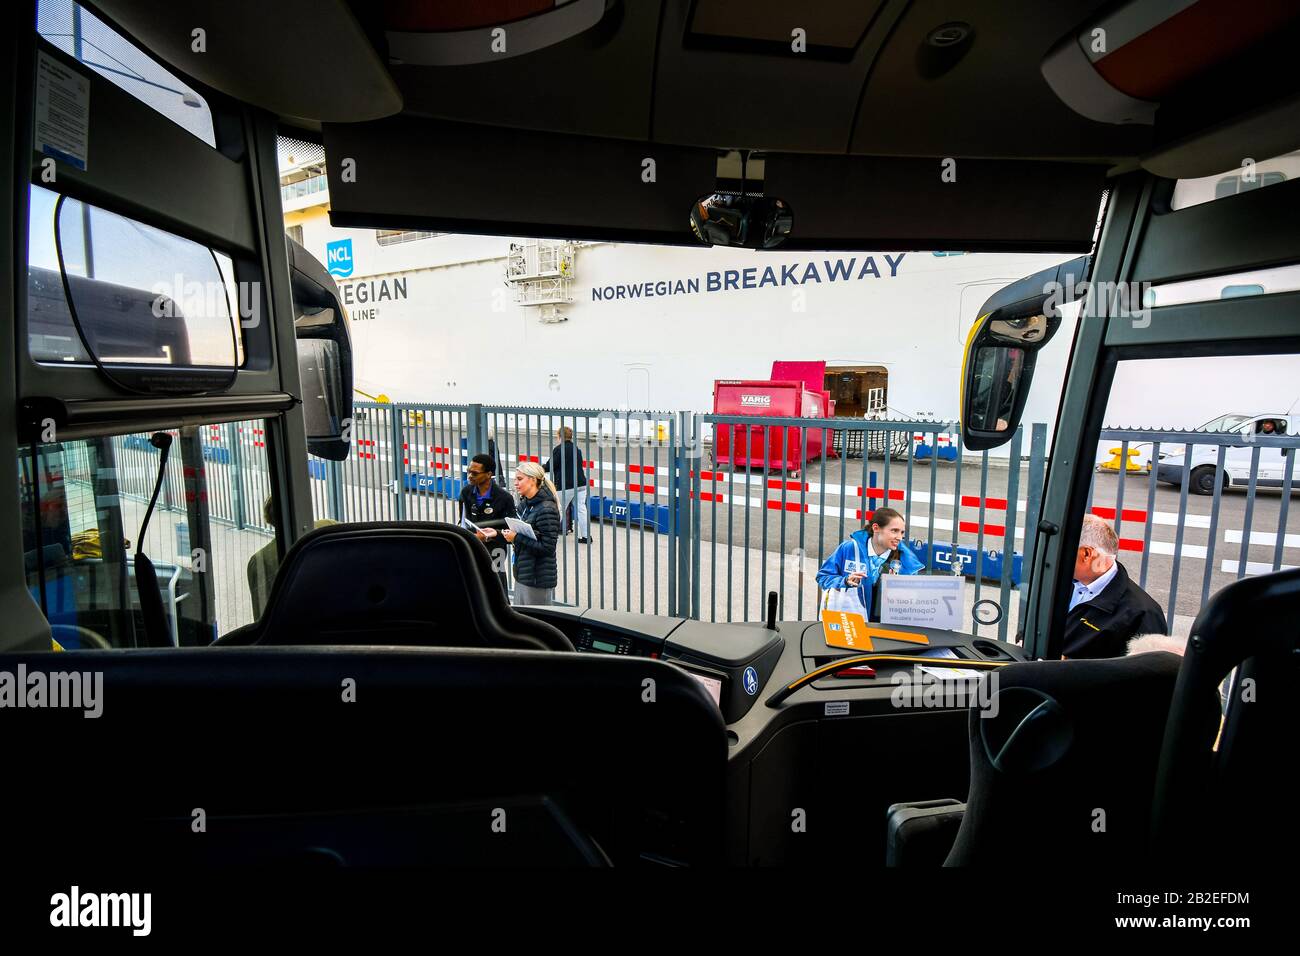 Die Reiseleiter warten auf Reisende von Kreuzfahrtschiffen im Bustickbereich entlang des Kreuzfahrthafens in Kopenhagen Dänemark. Stockfoto